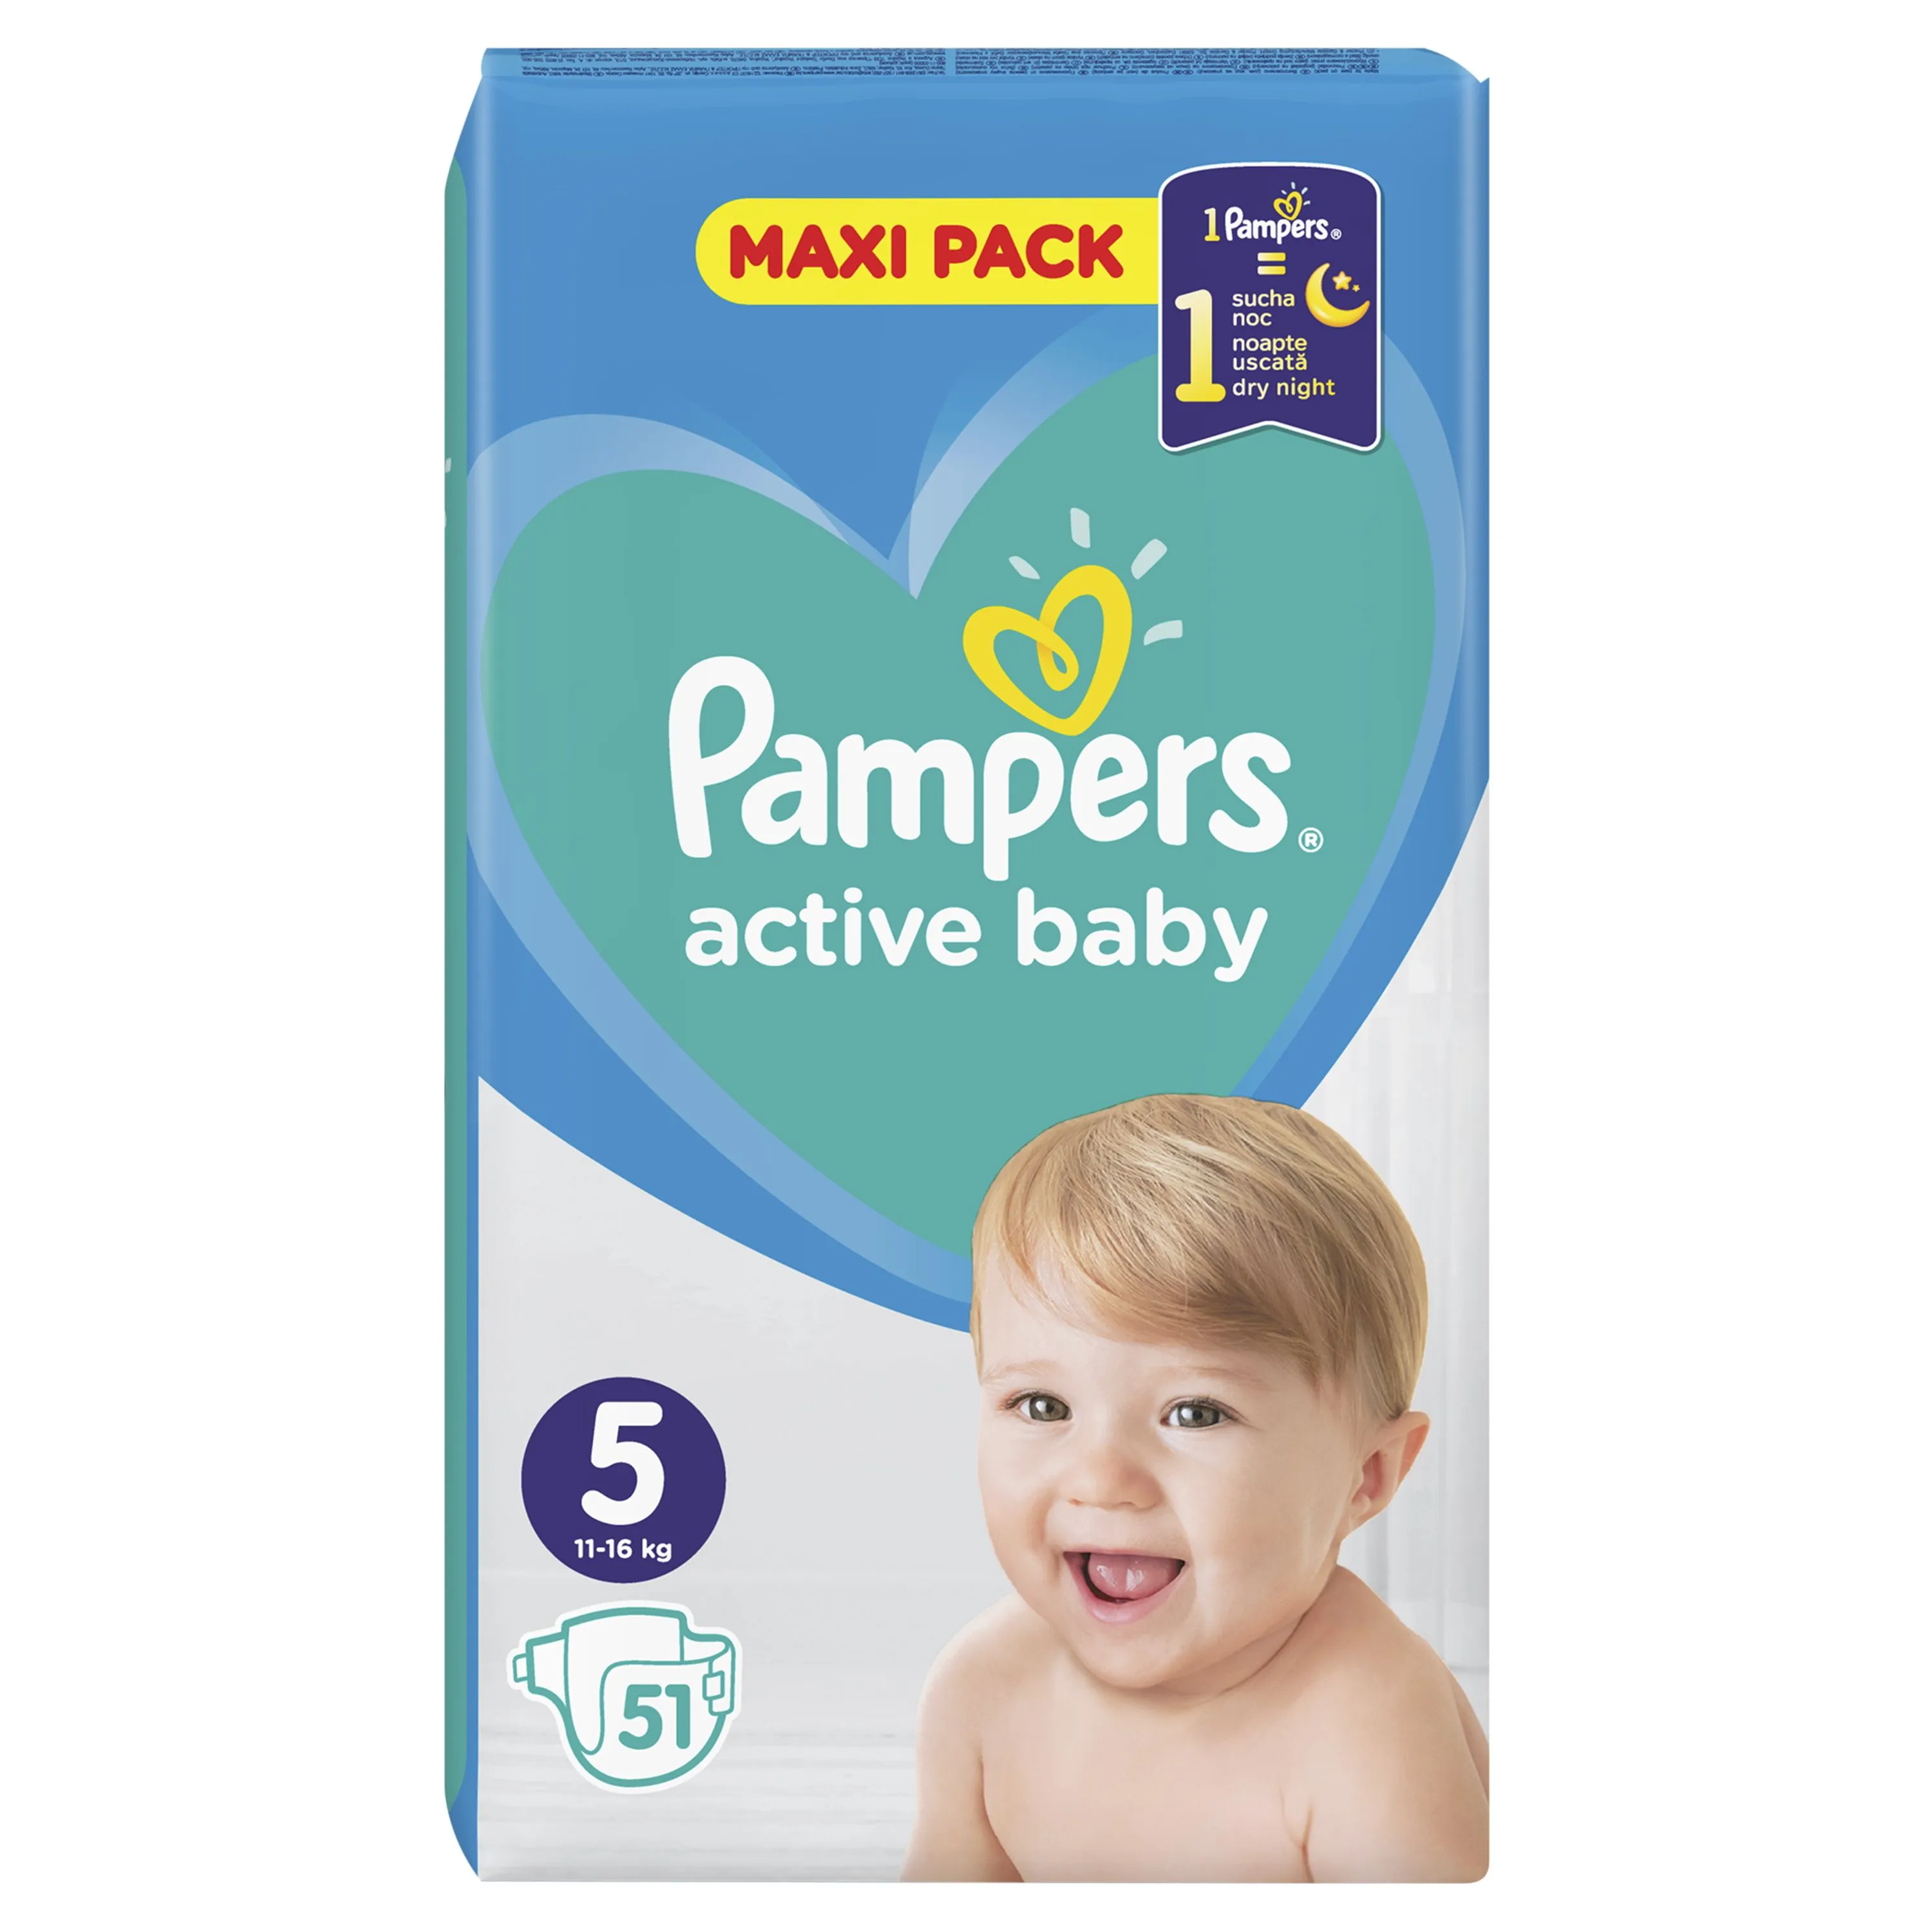 Pampers Active Baby vel. 5 Maxi Pack 11-16 kg dětské pleny 51 ks